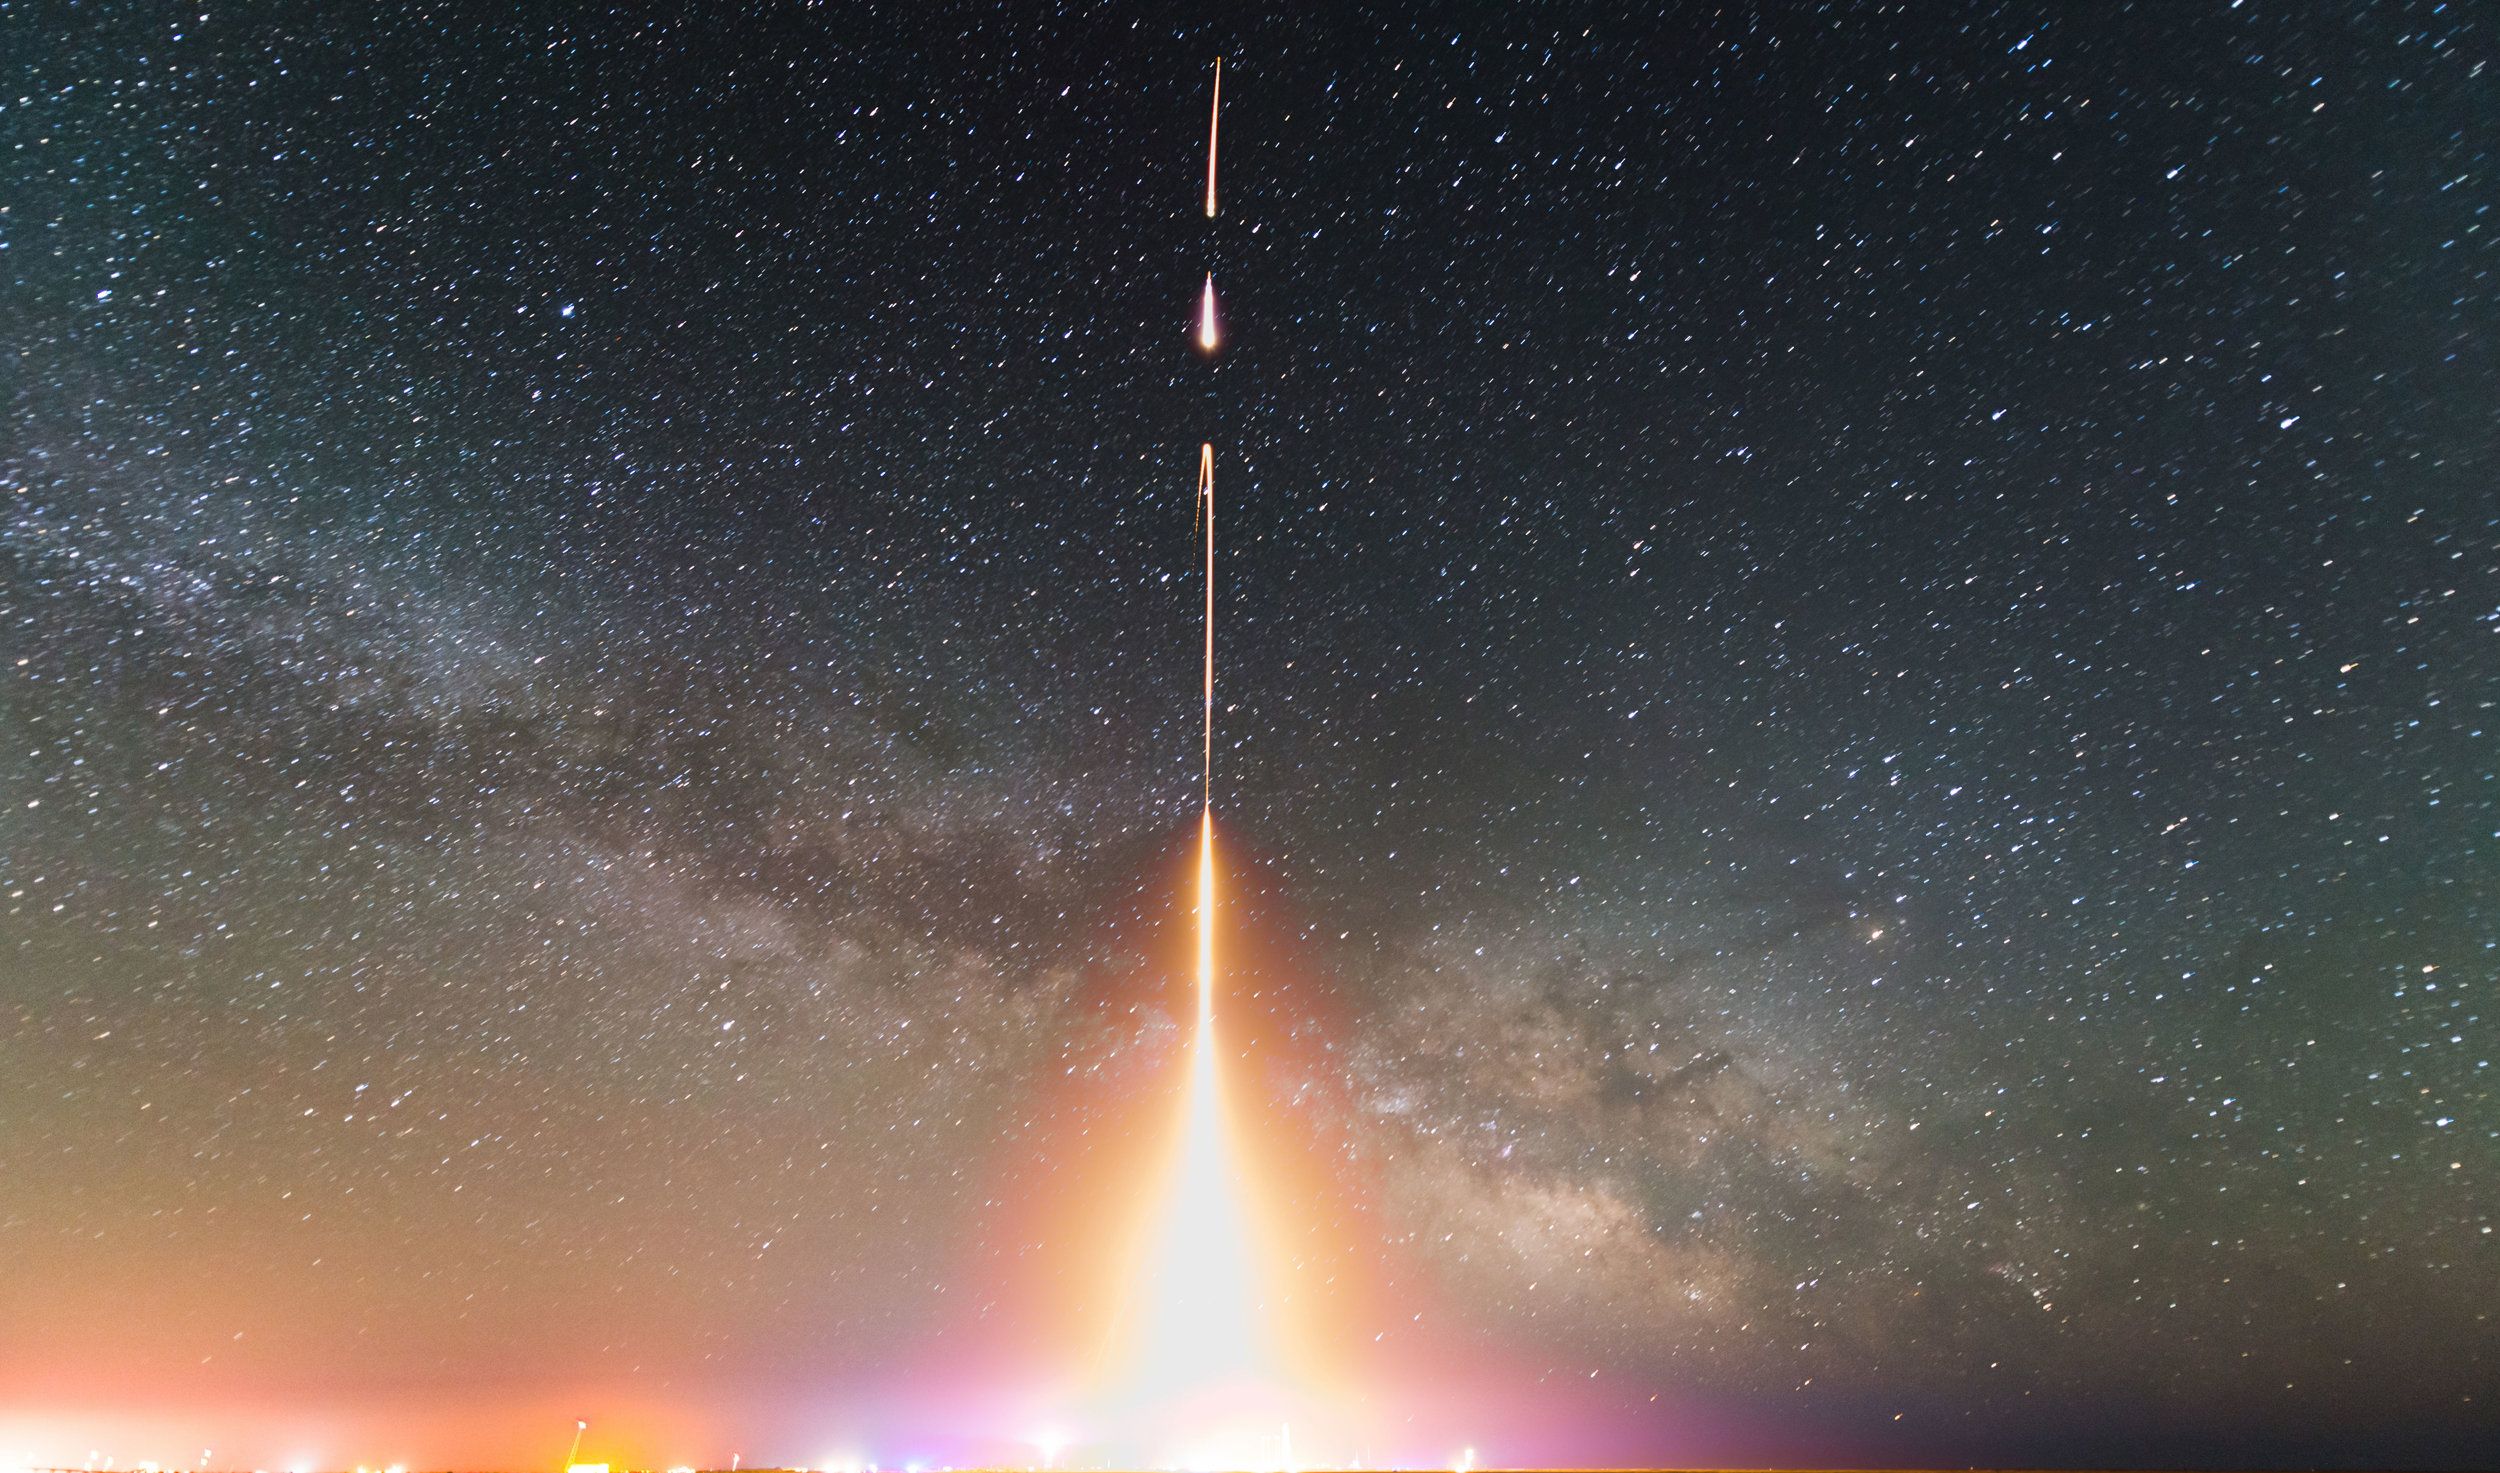 تصویر خارق العاده از آزمایش و پرتاب موشک واقعی به فضا 